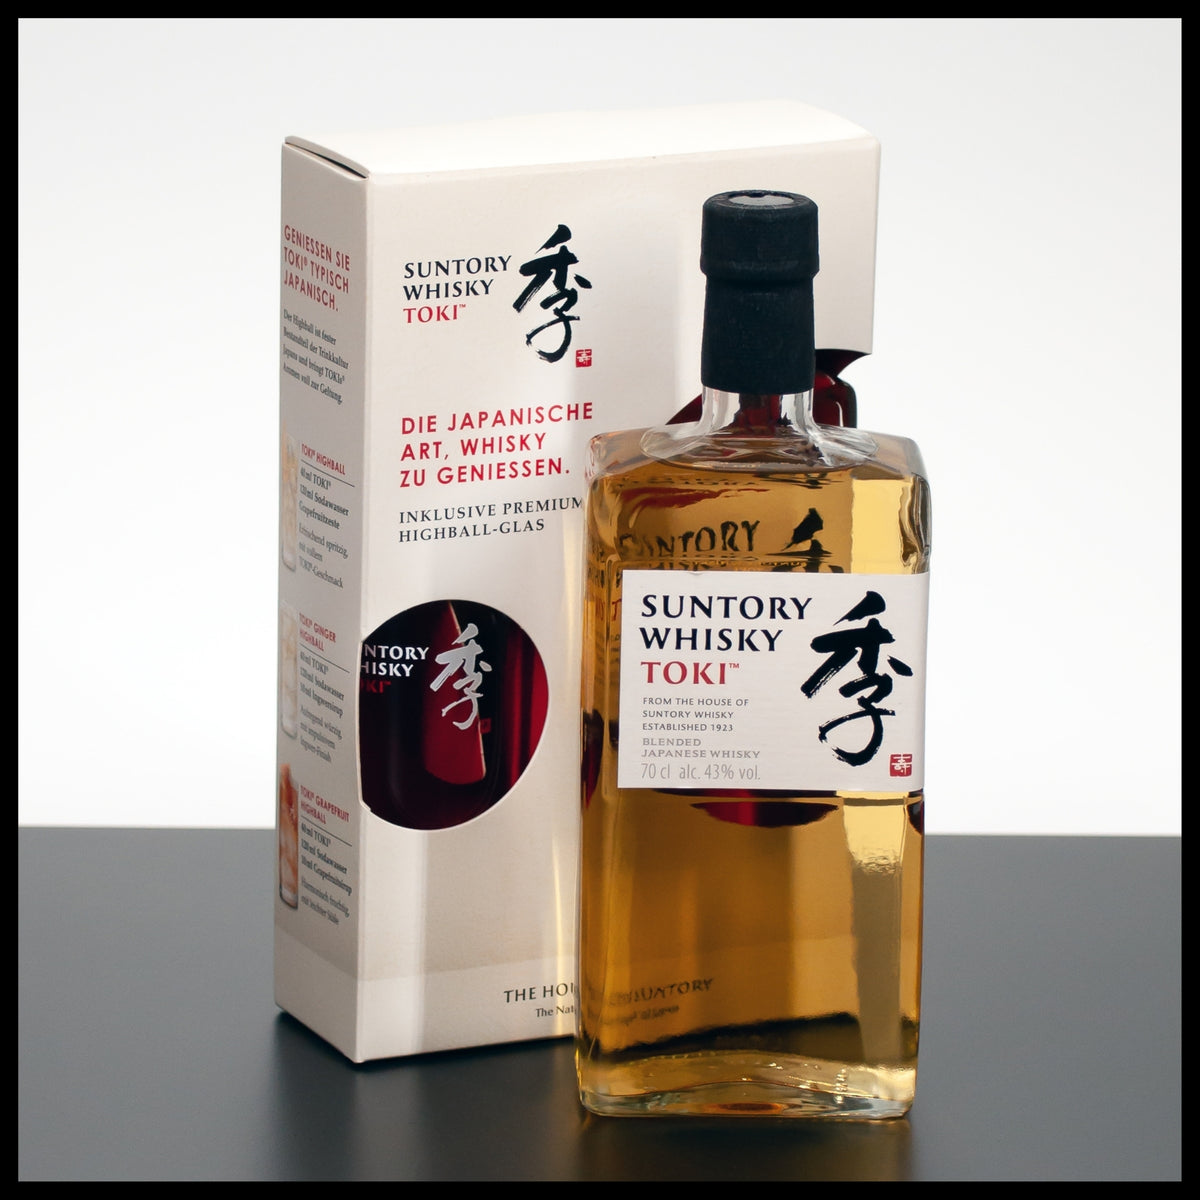 Suntory Toki Whisky Geschenkbox mit Glas 0,7L - 43% - Trinklusiv